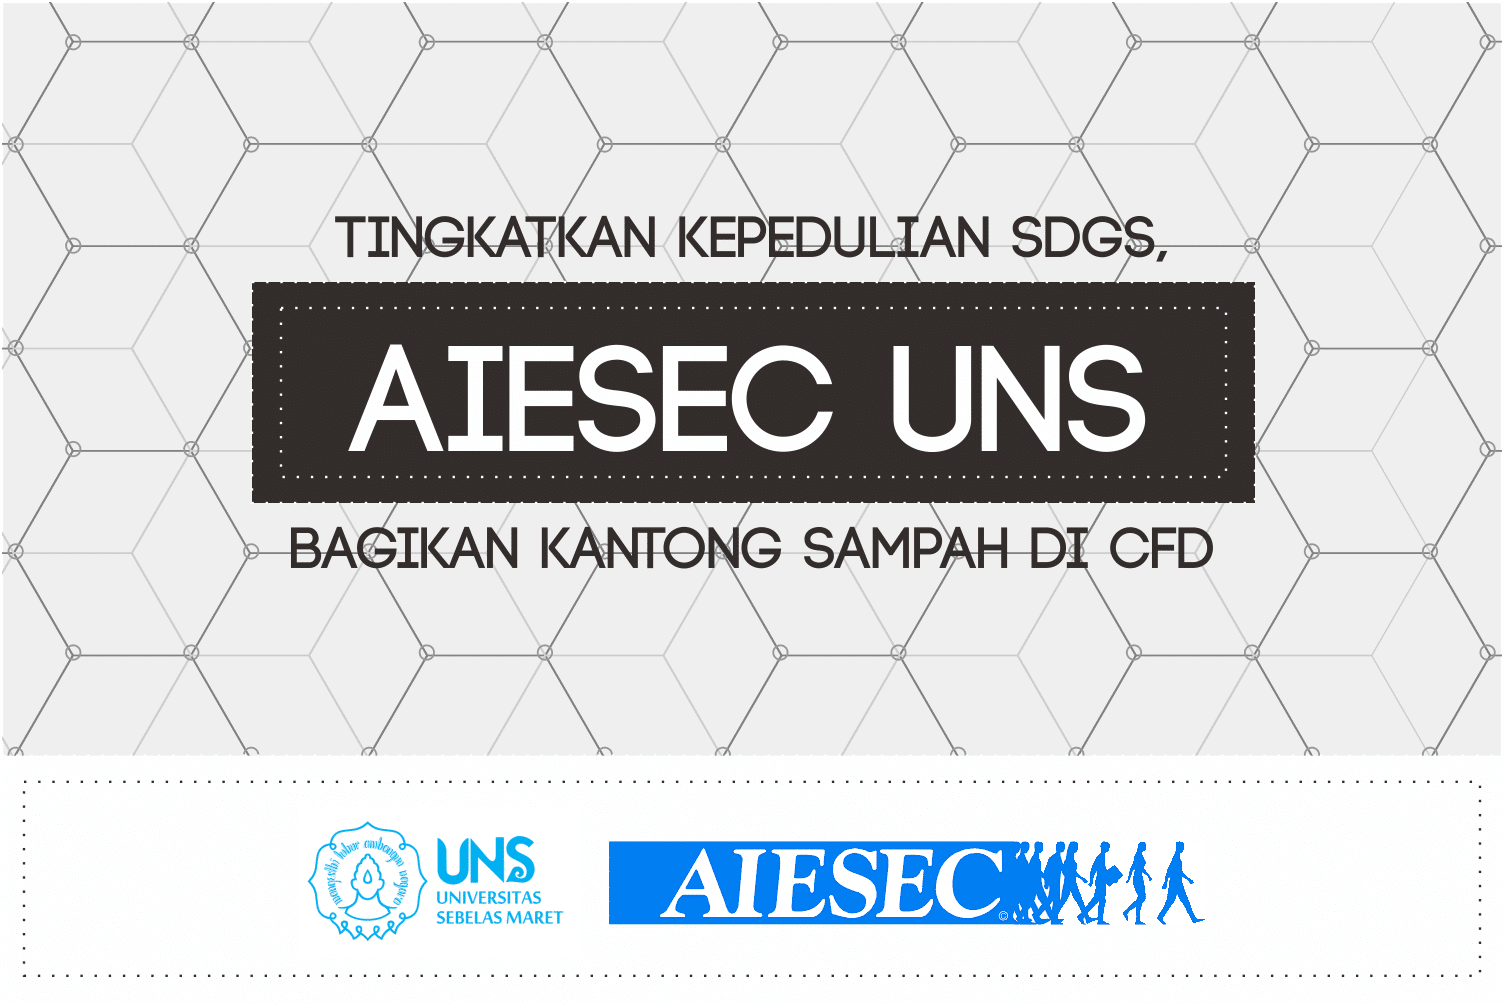 Tingkatkan Kepedulian SDGs, AIESEC UNS Bagikan Kantong Sampah di CFD